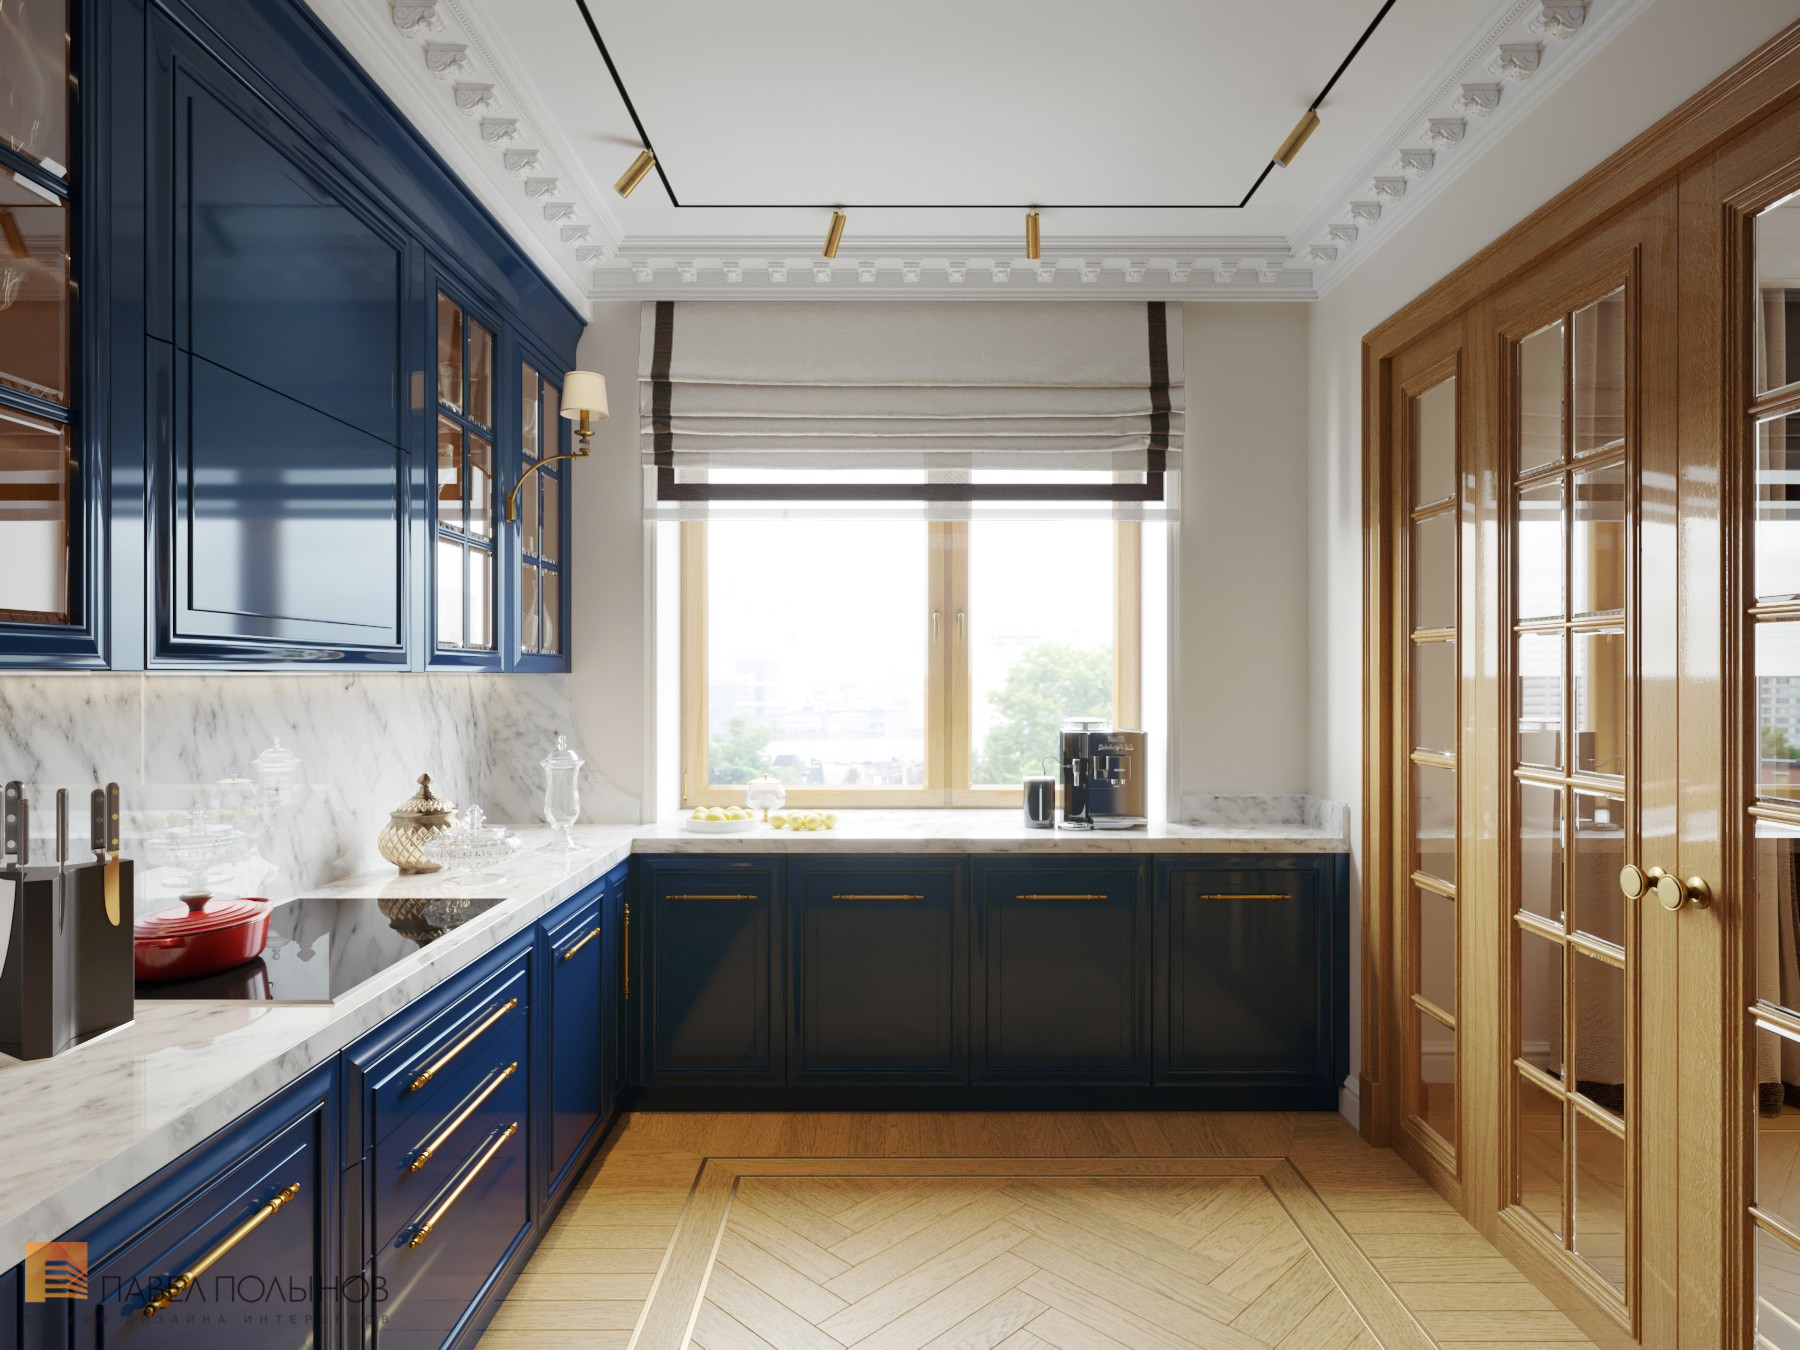 Фото дизайн интерьера кухни из проекта «Интерьер квартиры в стиле английской классики, ЖК «Патриот», 124 кв.м.»